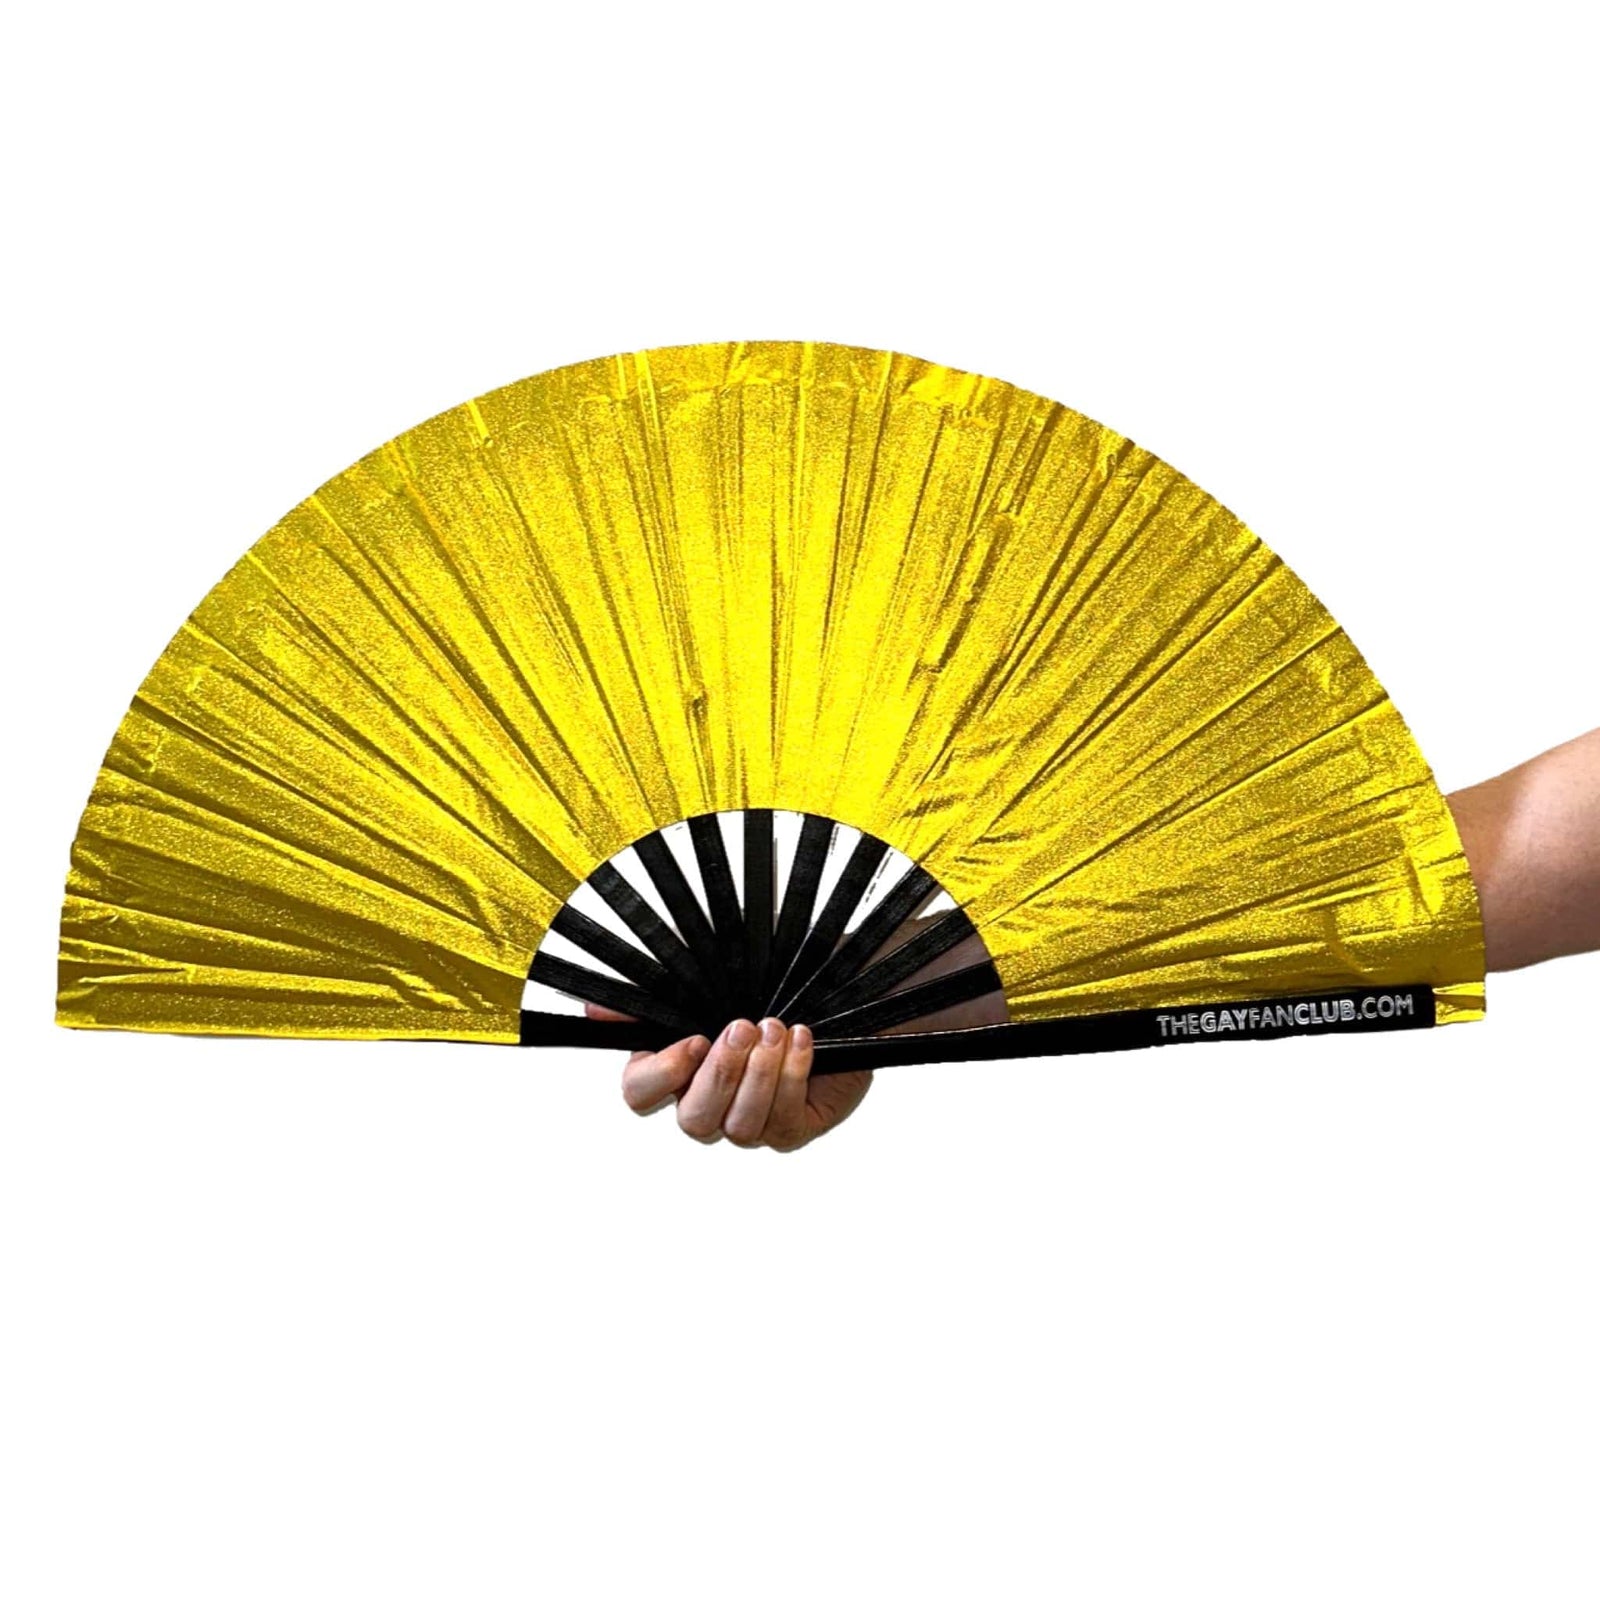 Gold Glitter Fan - Glitter Hand Fan - The Gay Fan Club